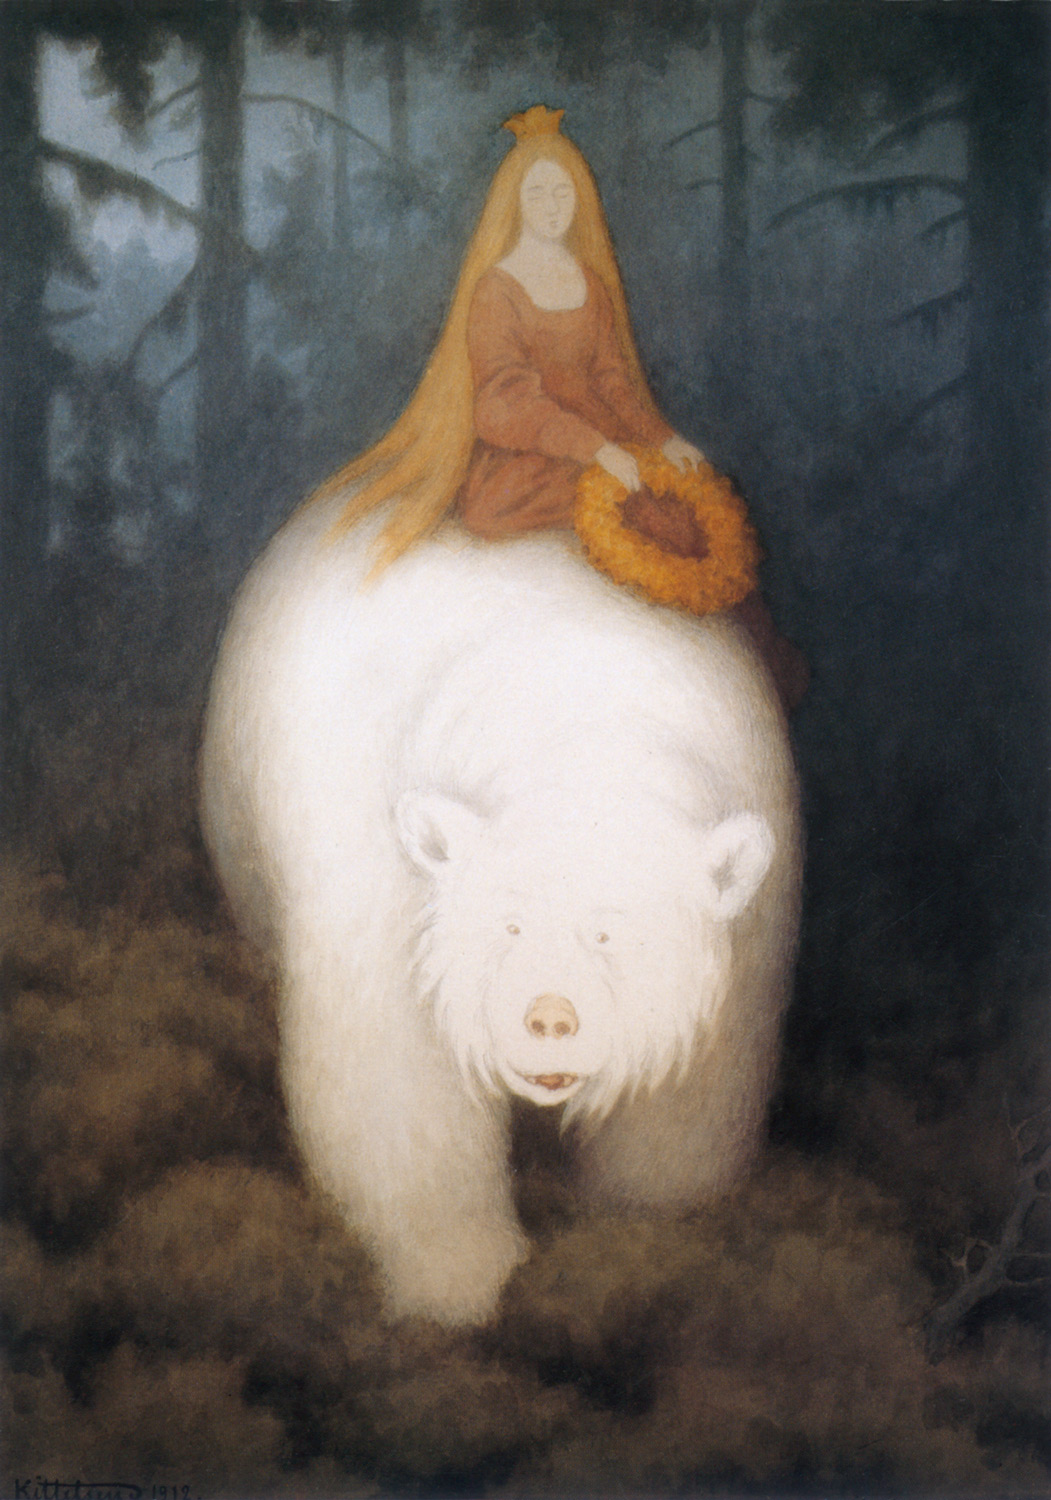 الملك فيلمون الدب الابيض by Theodor Kittelsen - 1912 م - 423 x 300 مم 